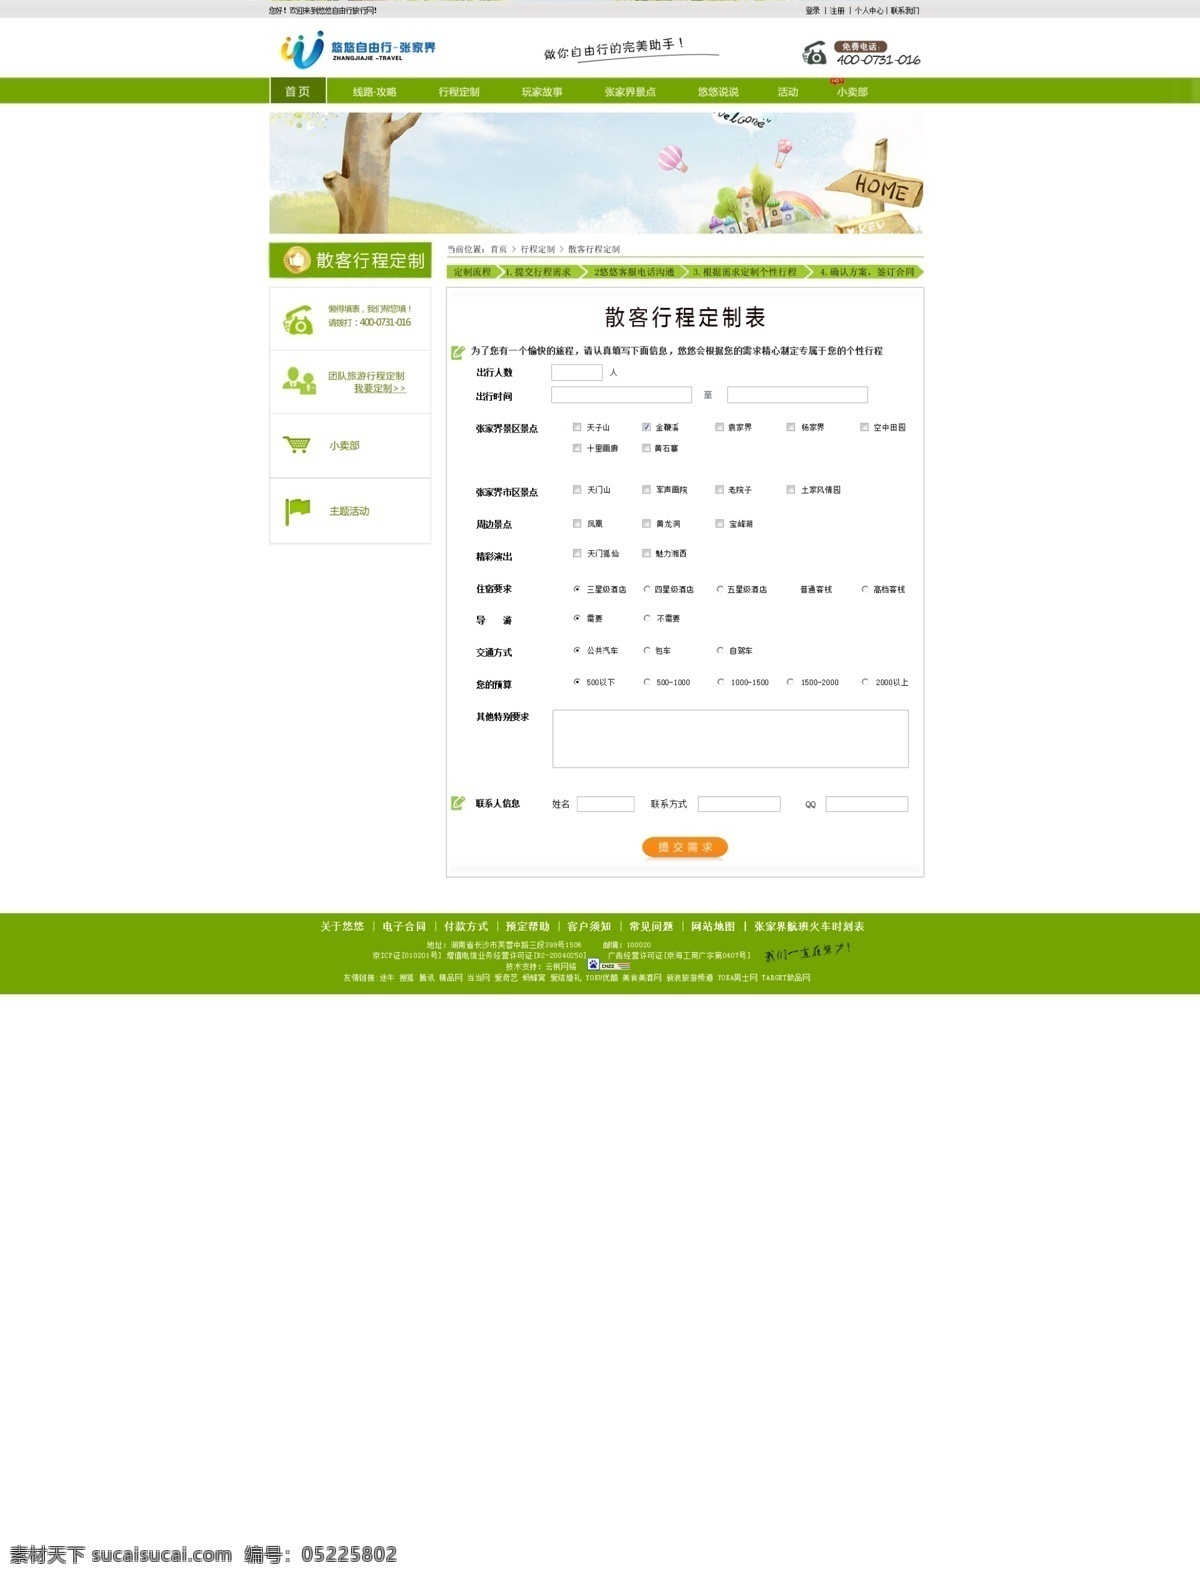 表格 旅游 绿色 网页 网页模板 源文件 中文模板 行程 定制 模板下载 行程定制 diy定制 网页素材